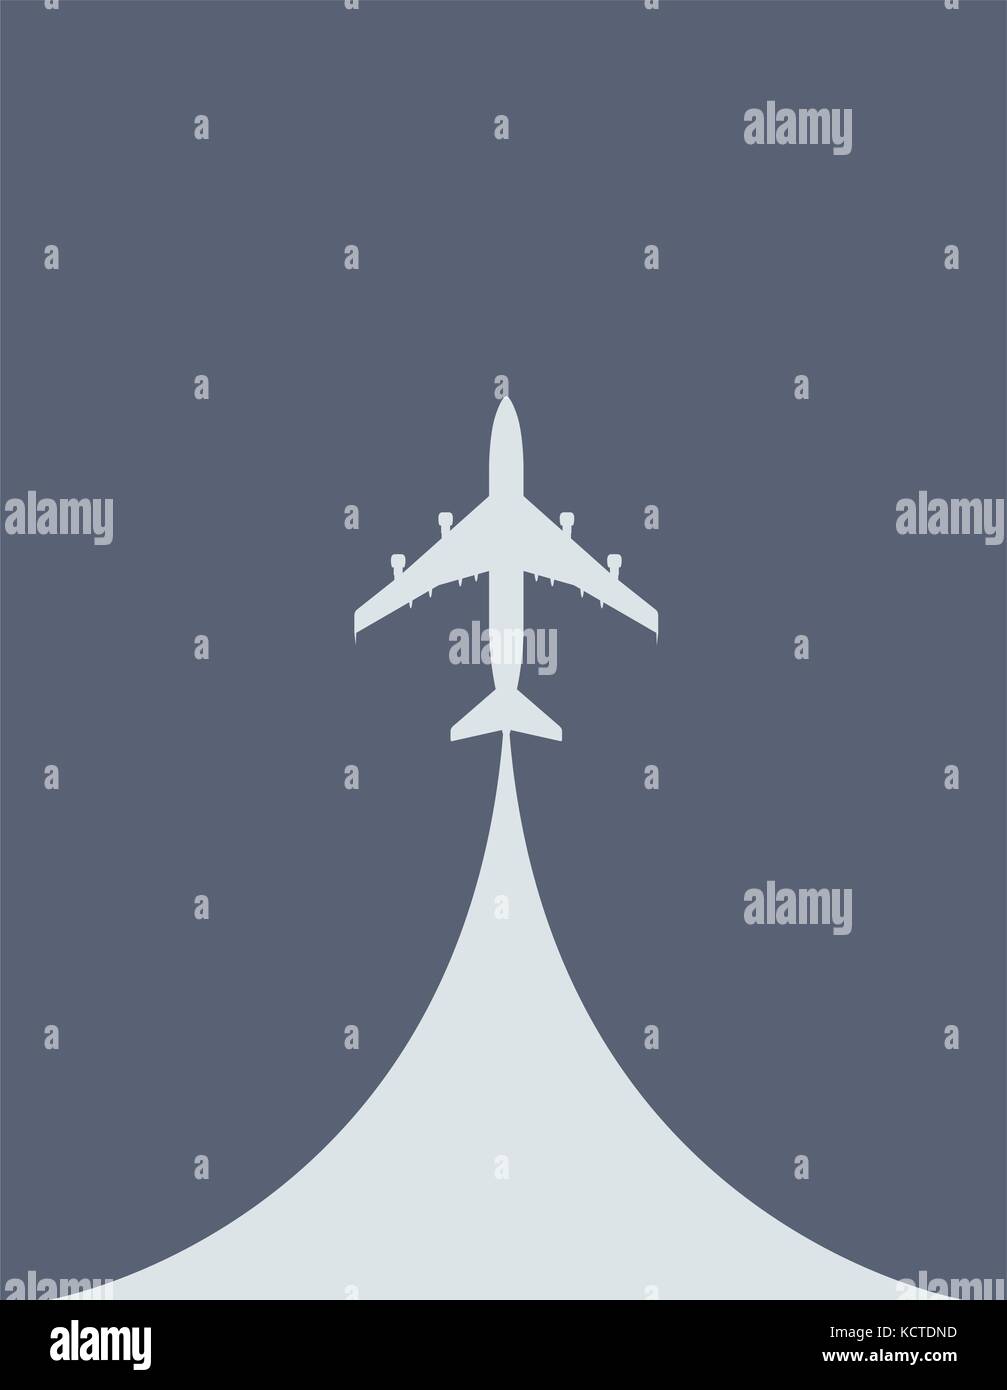 Durant le décollage d'aéronefs - silhouette d'avion de ligne, vue d'en haut Illustration de Vecteur